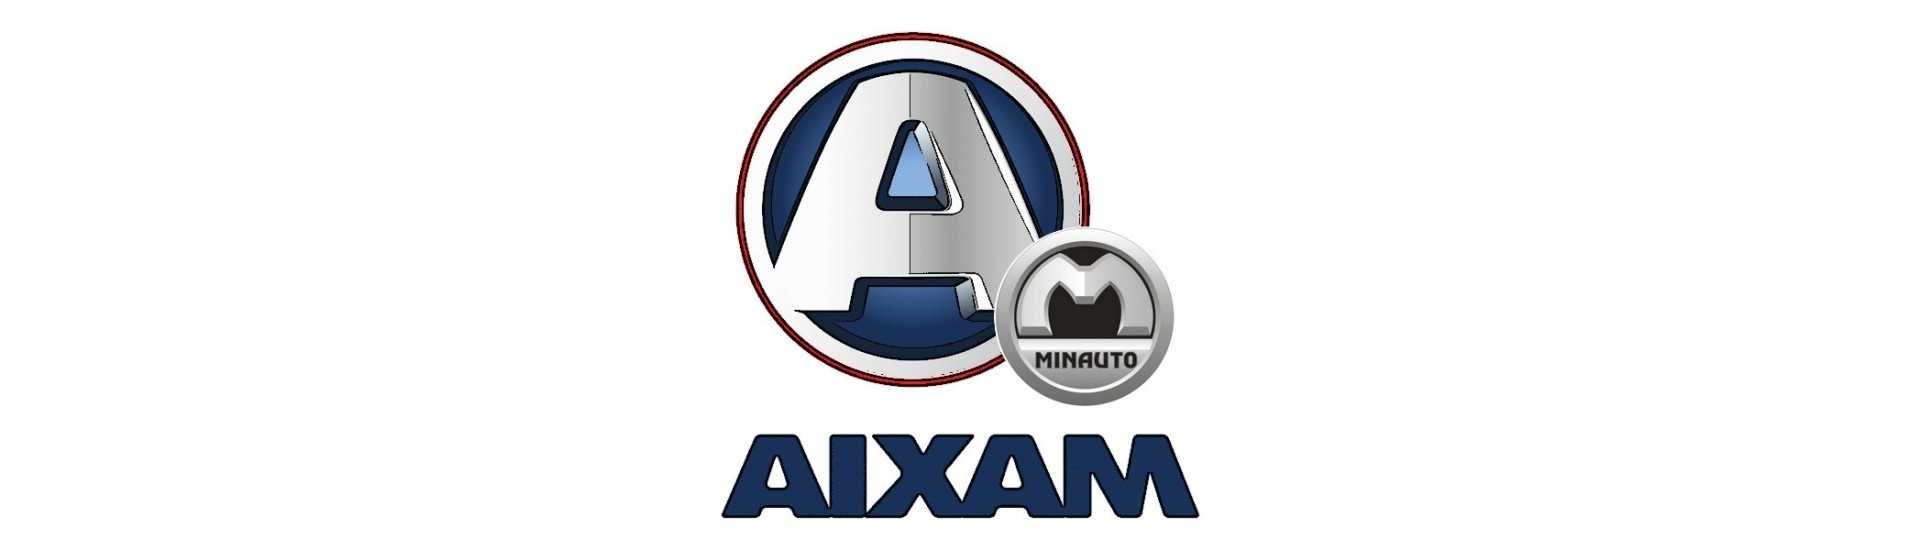 Comodo la cel mai bun preț pentru mașini fără permis Aixam Minauto